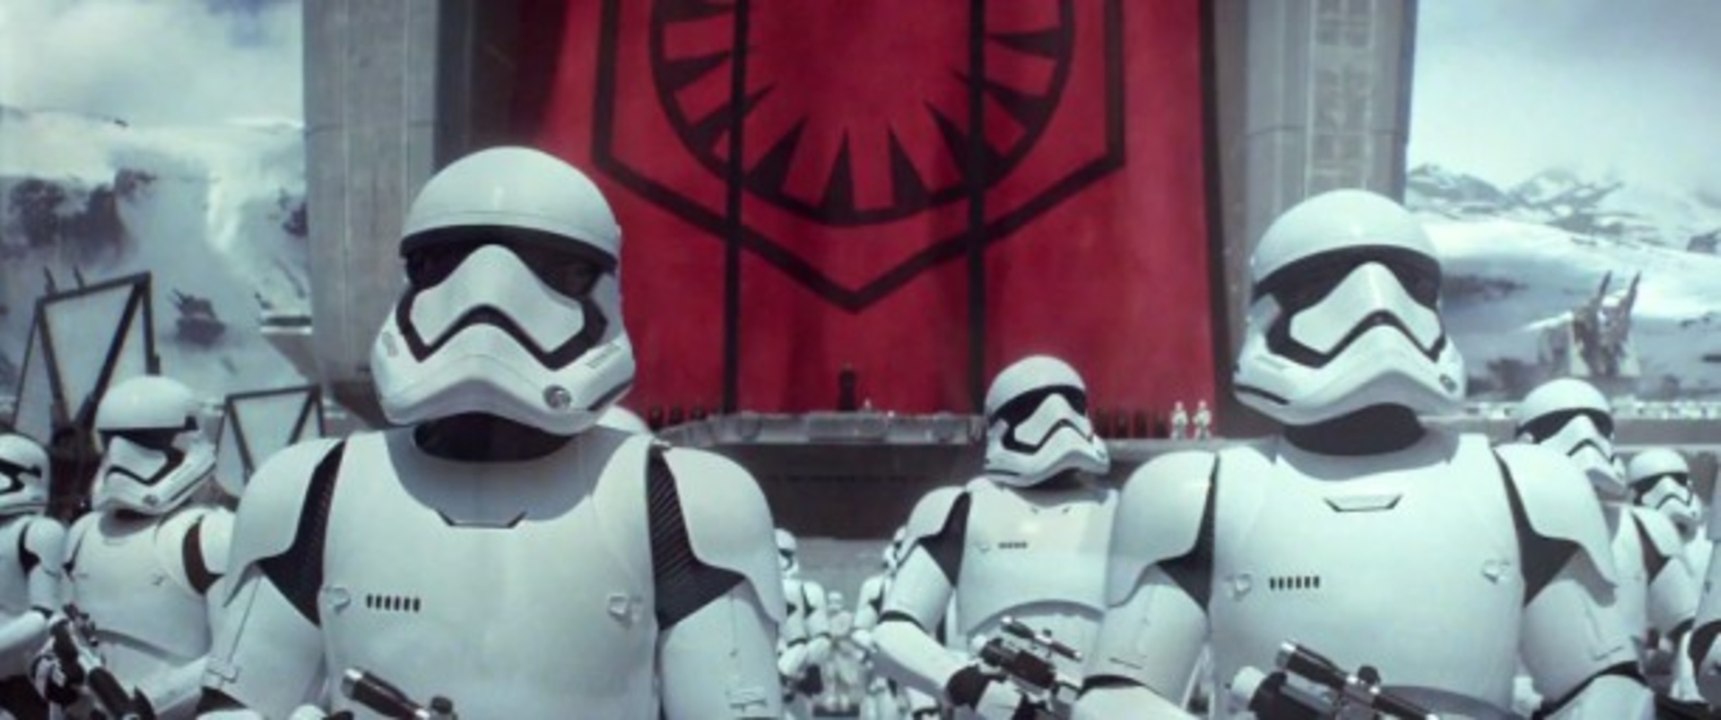 Star Wars Das Erwachen der Macht - Teaser Trailer 2 (Deutsch) HD